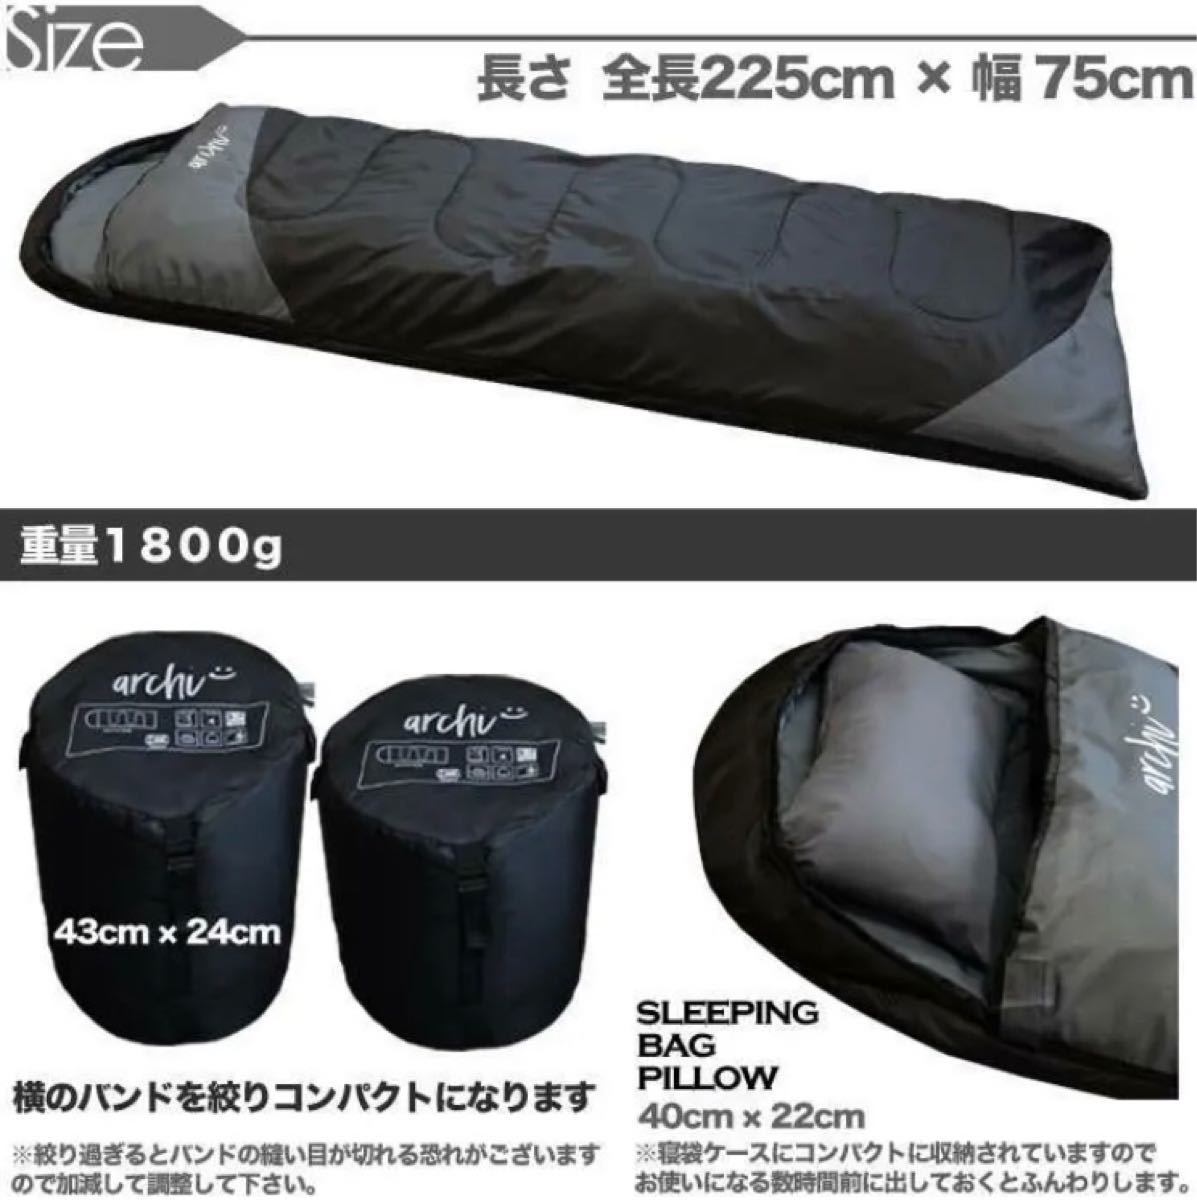 3個セット 新品 枕付き 寝袋 シュラフ フルスペック 封筒型 -15℃ 登山 ブラック 黒 キャンプ 車中泊 防災 送料無料